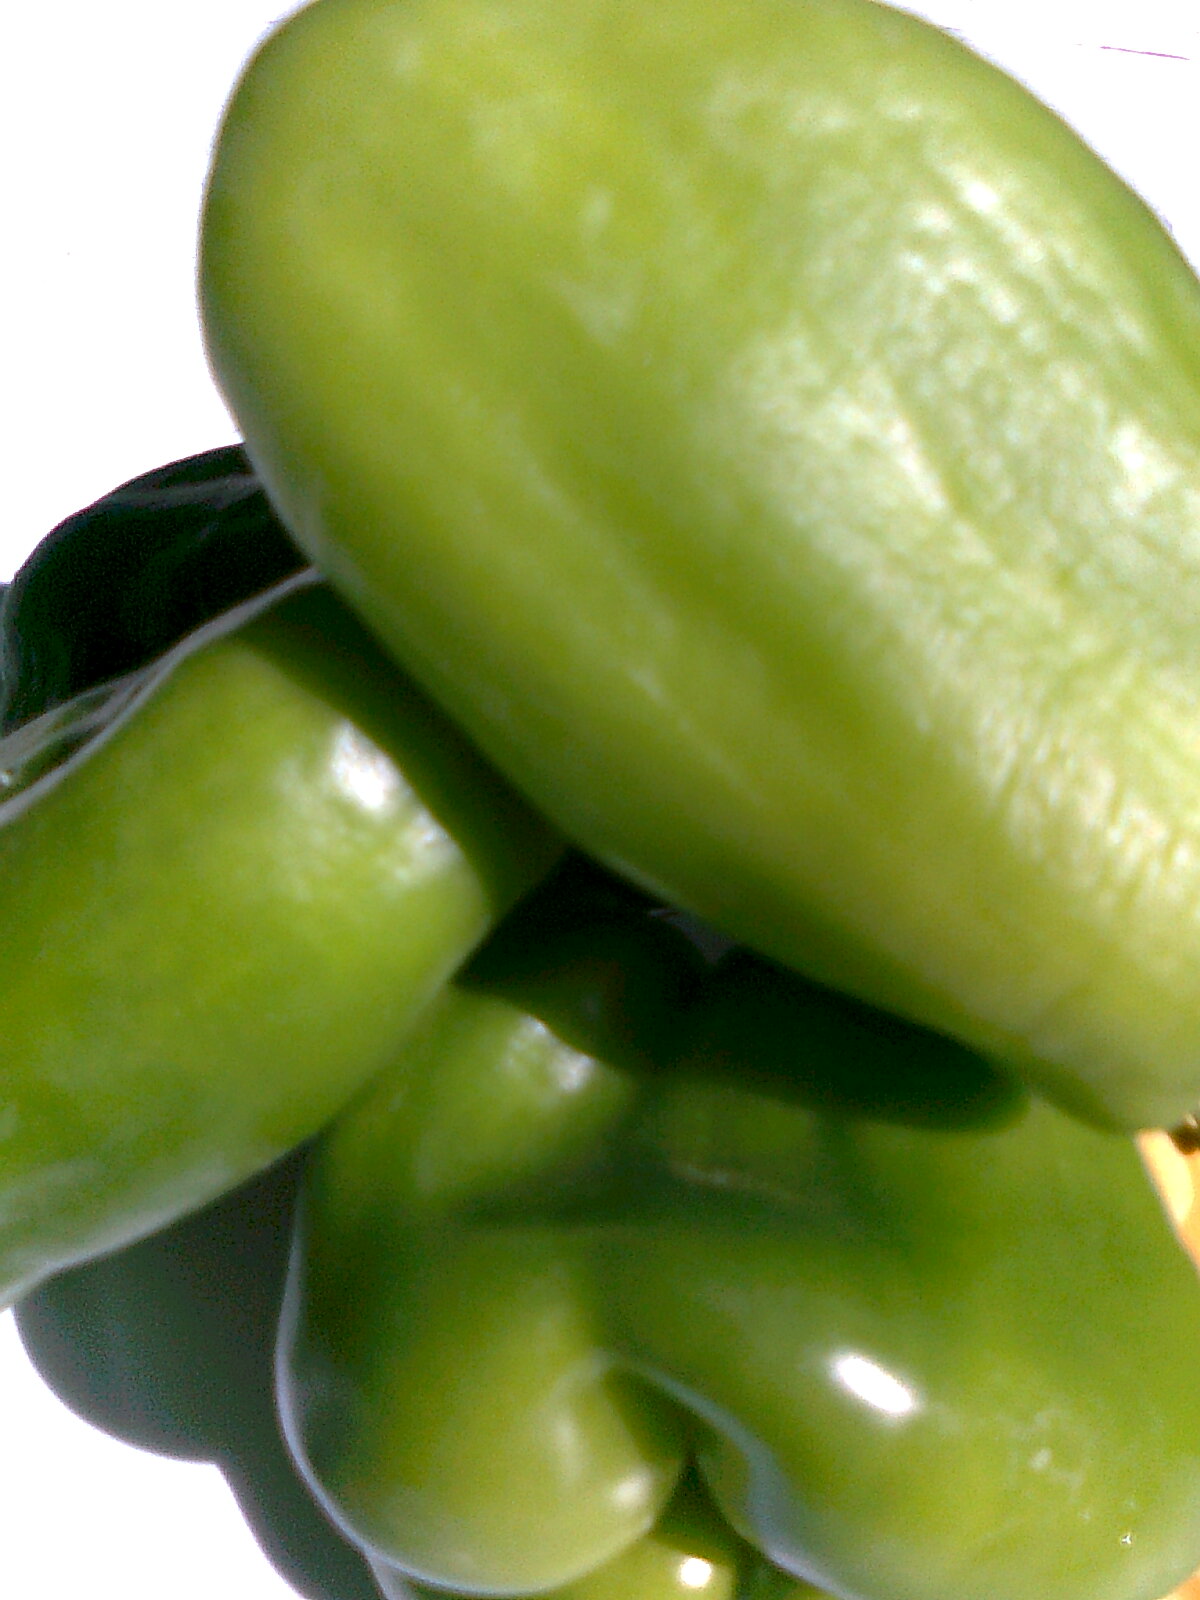 File:Green-Bell-Pepper.jpg - Wikimedia Commons